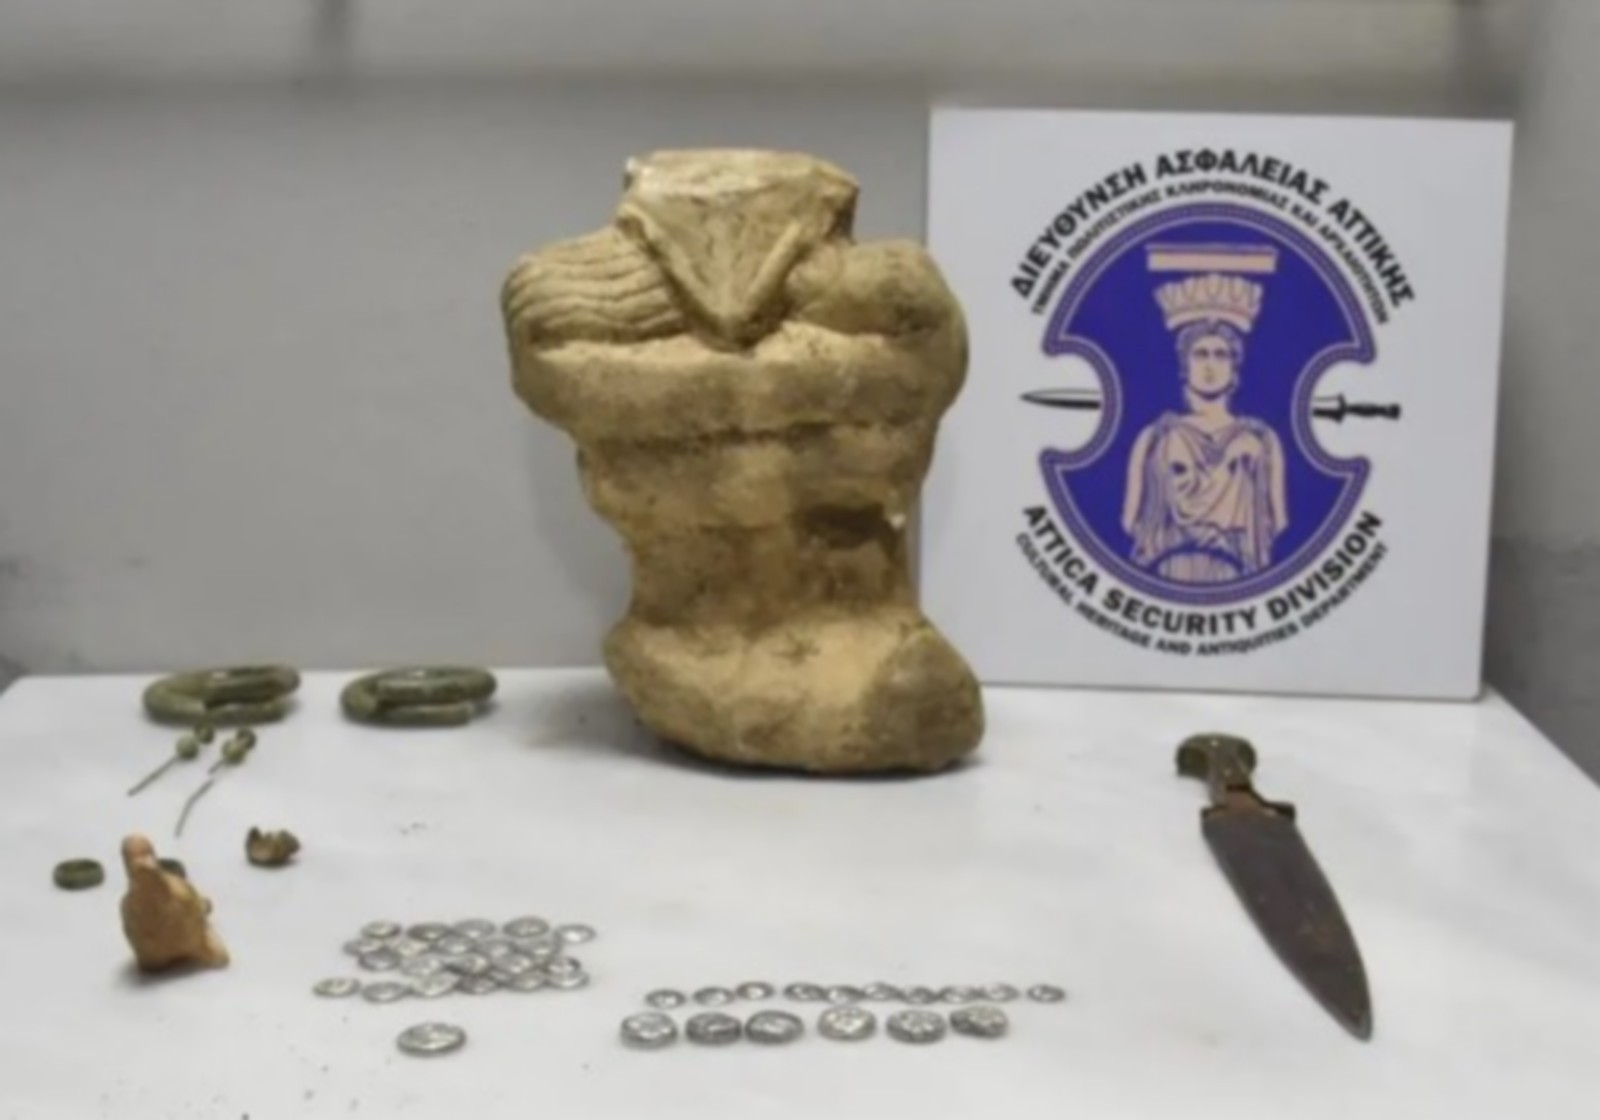 Εύβοια: Απετράπη αγοραπωλησία αρχαίων νομισμάτων ανυπολόγιστης αξίας